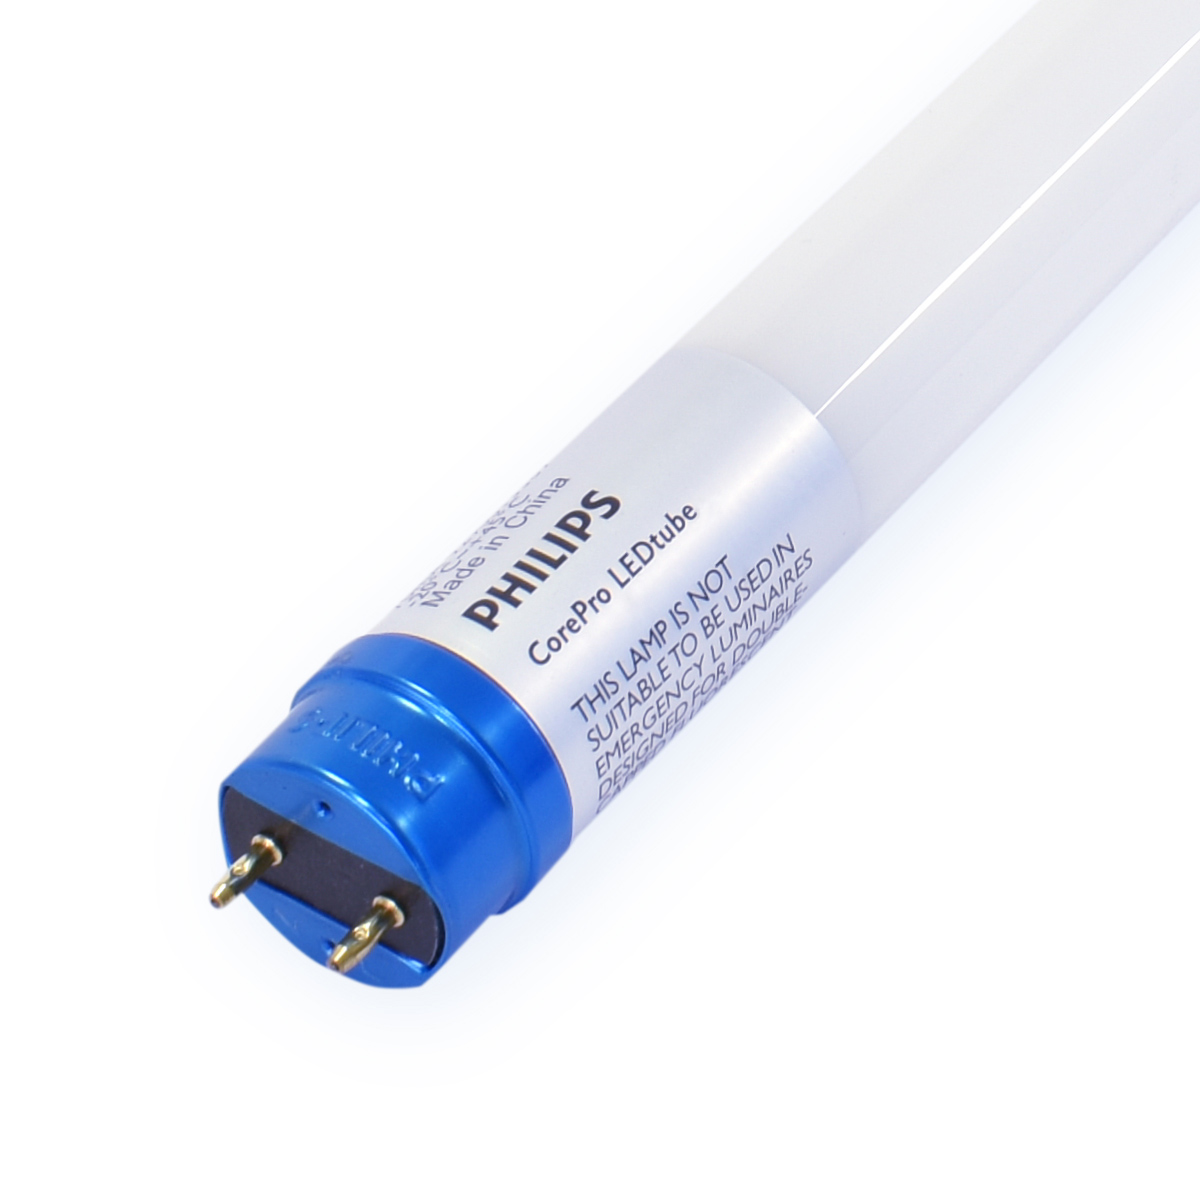 De Philips CorePro LED-buis is betaalbare en energiezuinige LED-verlichting!